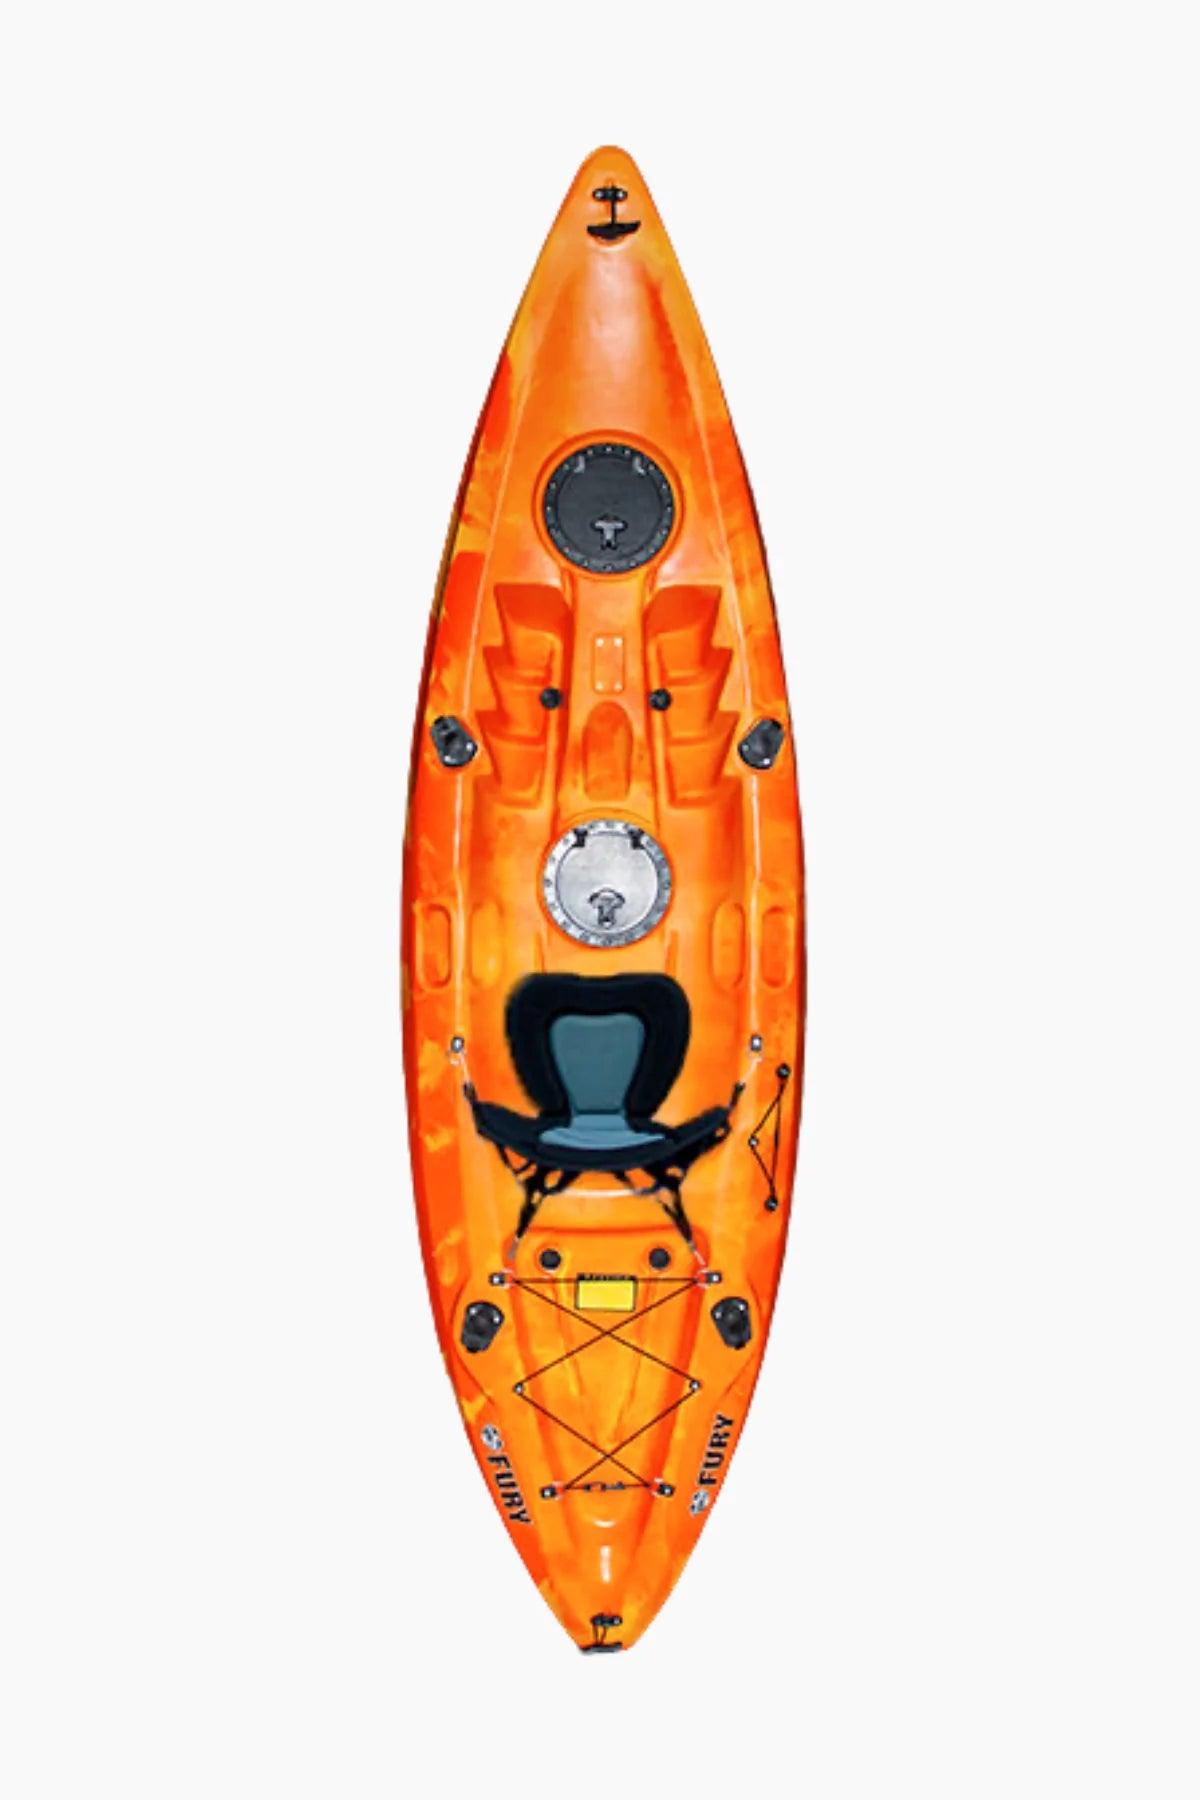 Rental: Single Kayak & 1 Paddle - Cottage Toys - Peterborough - Ontario - Canada